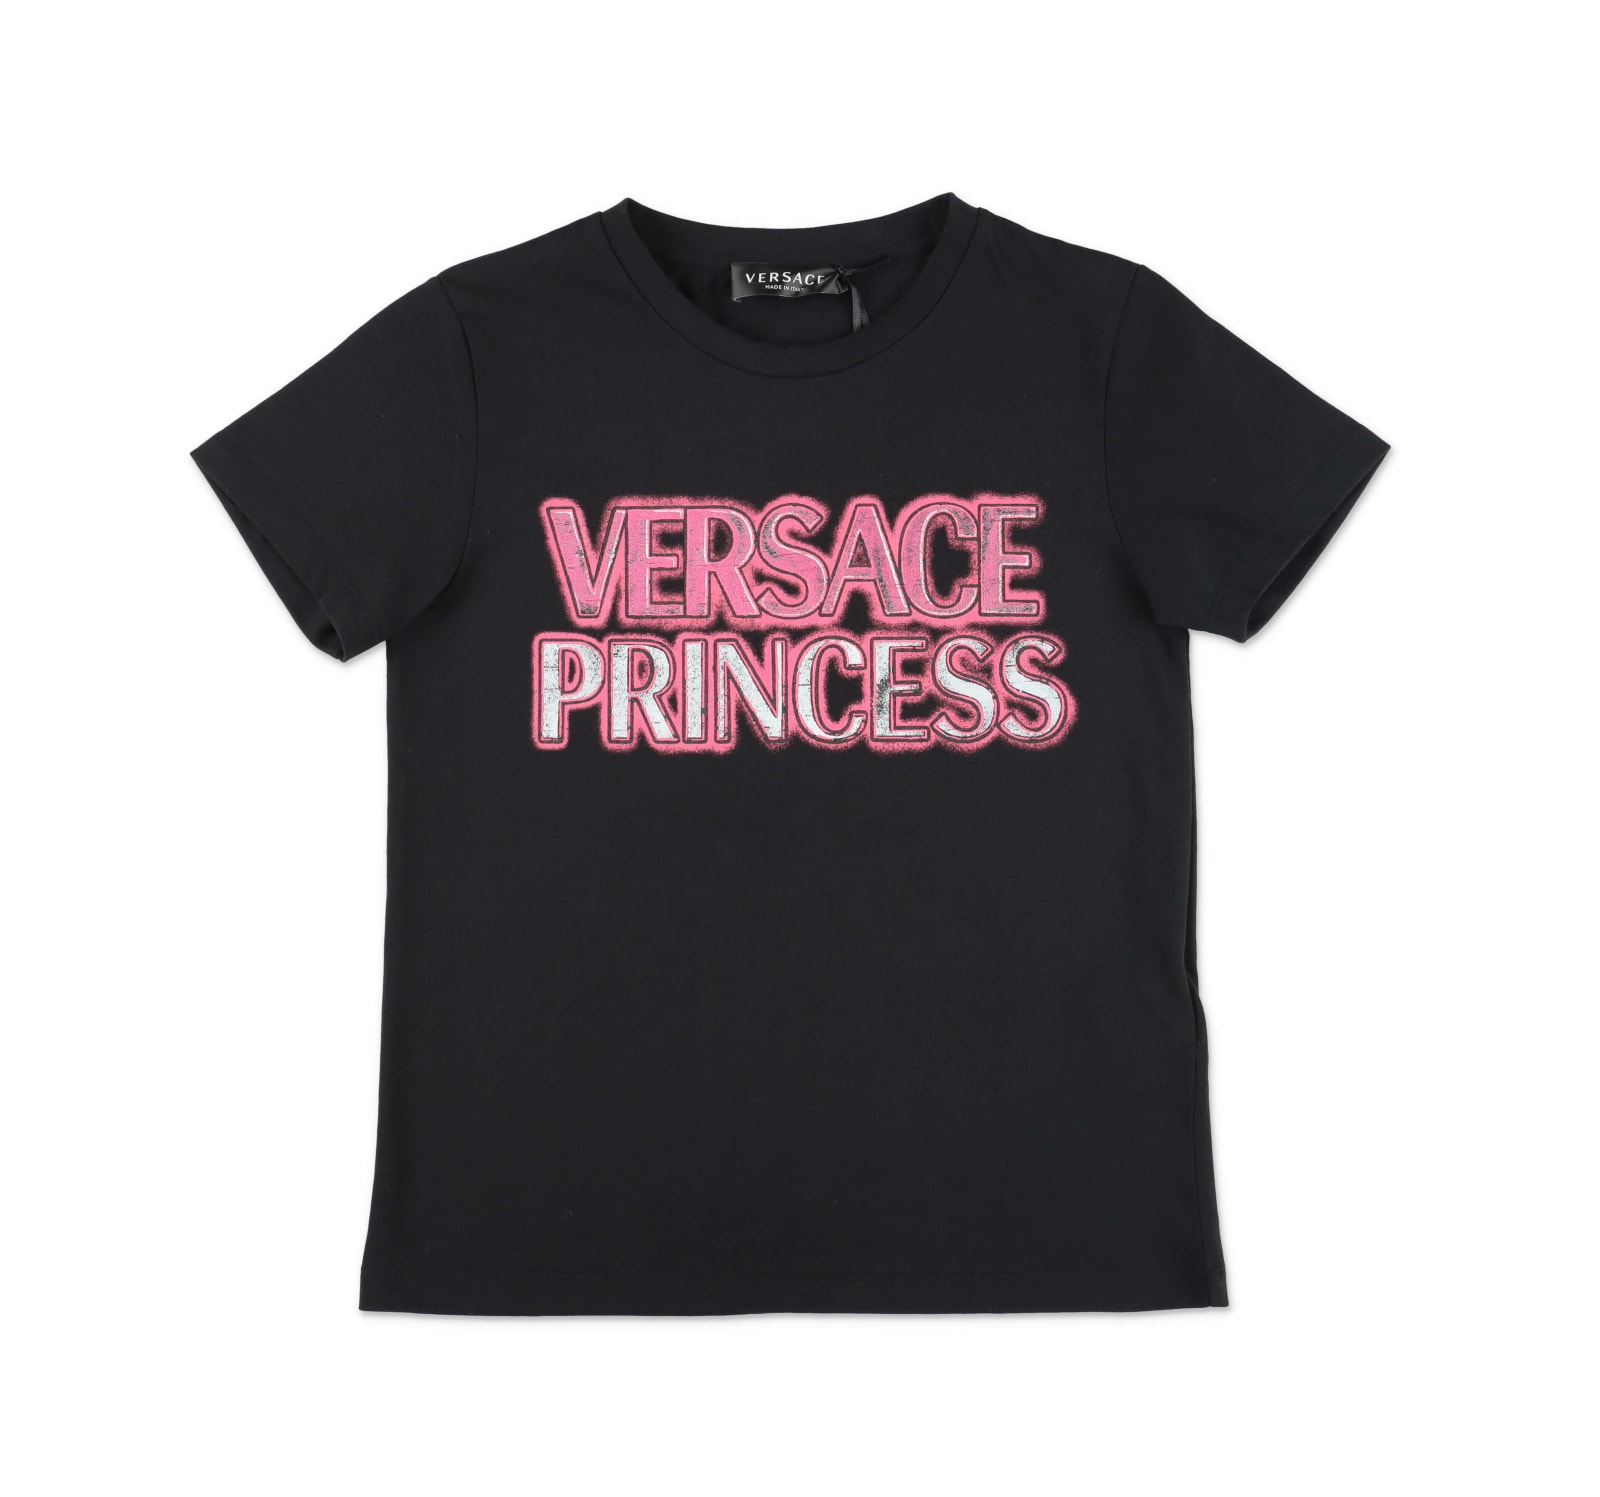 Versace T-shirt Nera In Jersey Di Cotone Bambina